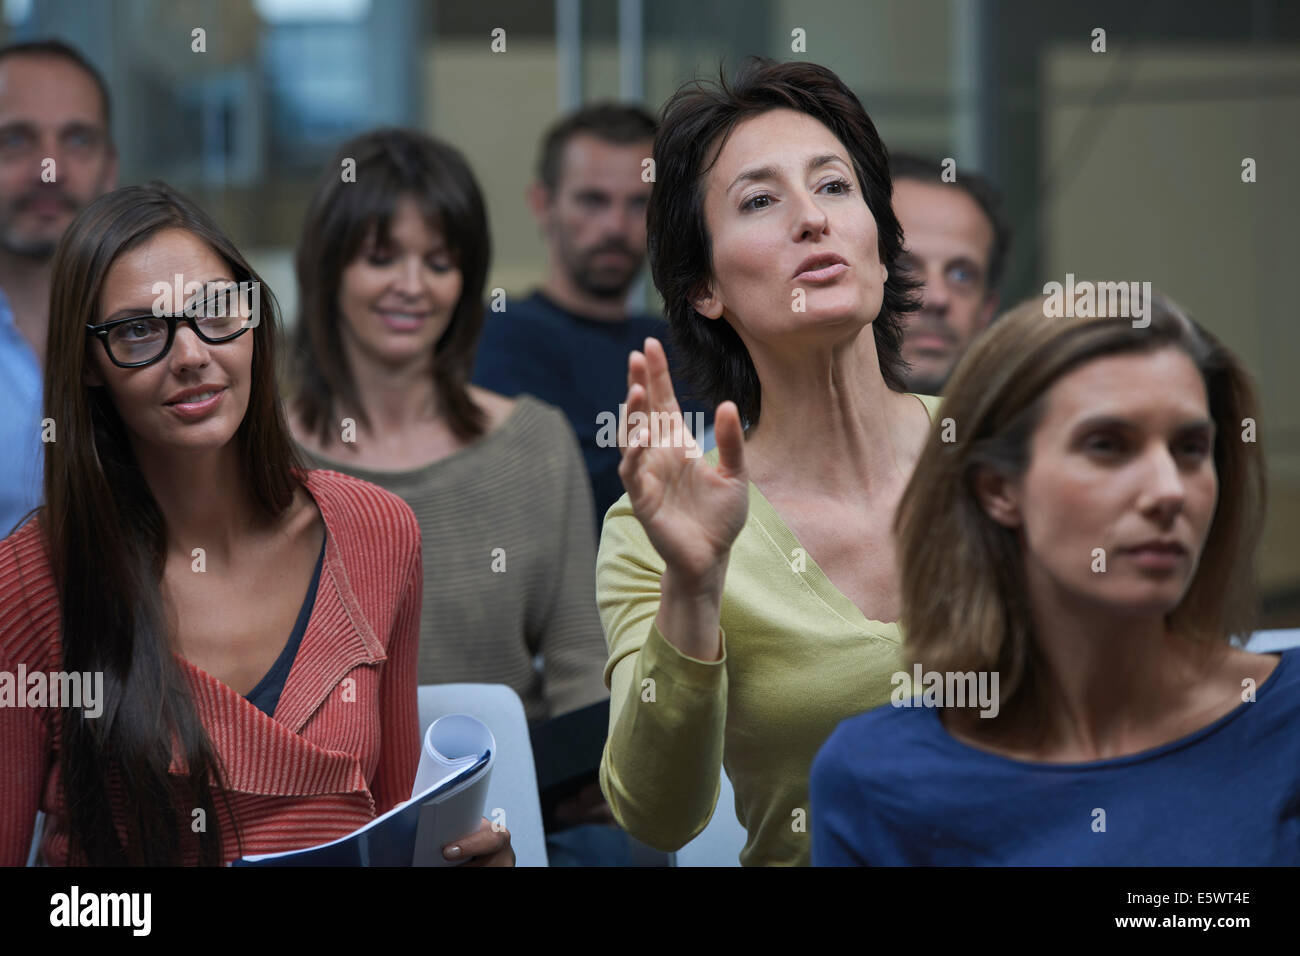 Grupo viendo la presentación, mujer levantando la mano Foto de stock